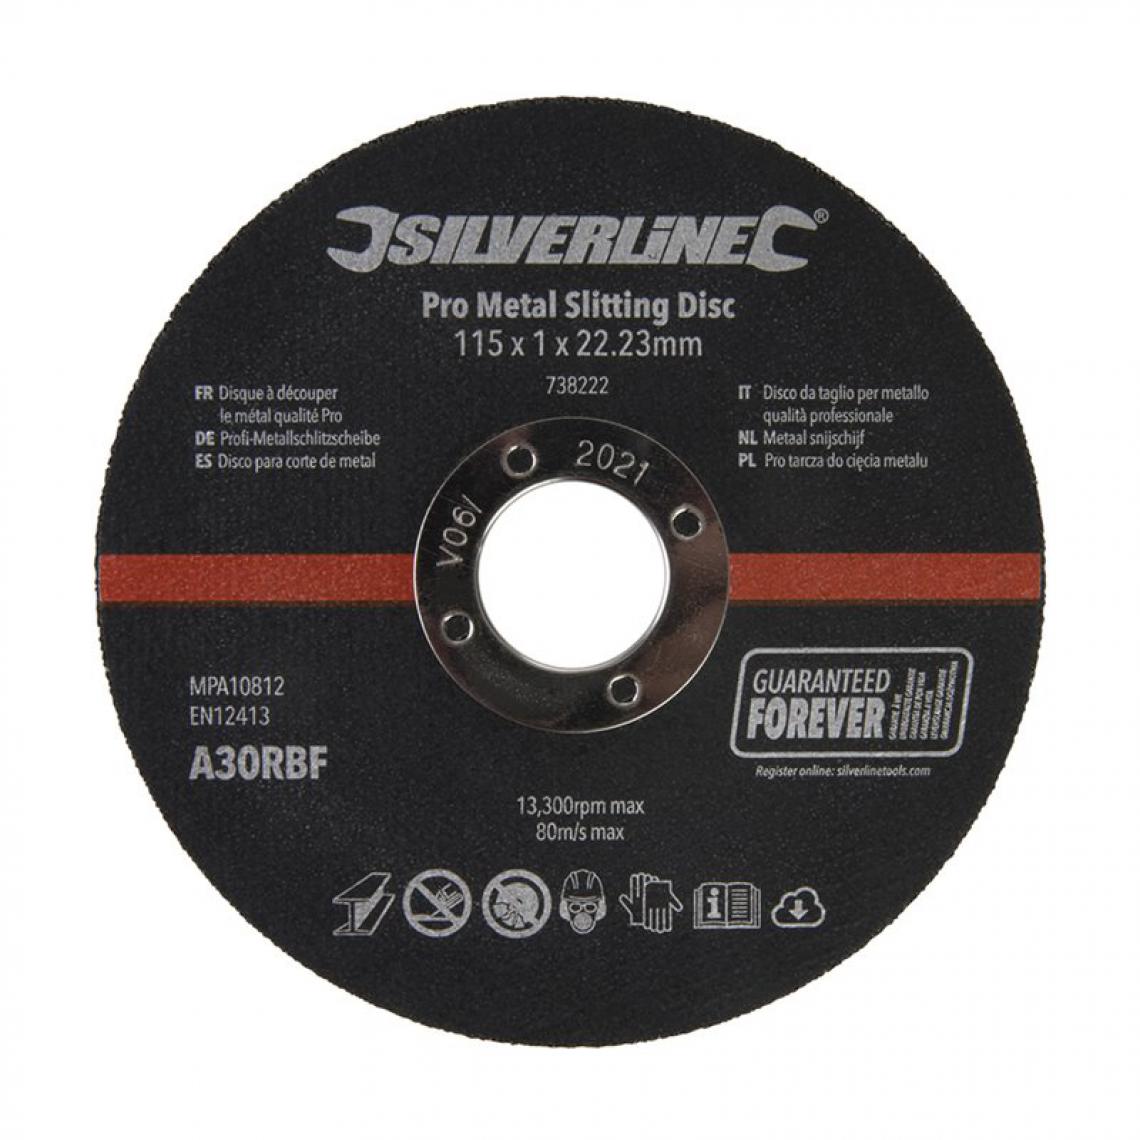 Silverline - Lot de 10 disques à découper le métal qualité Pro - 115 x 1 x 22,23 mm - Accessoires meulage